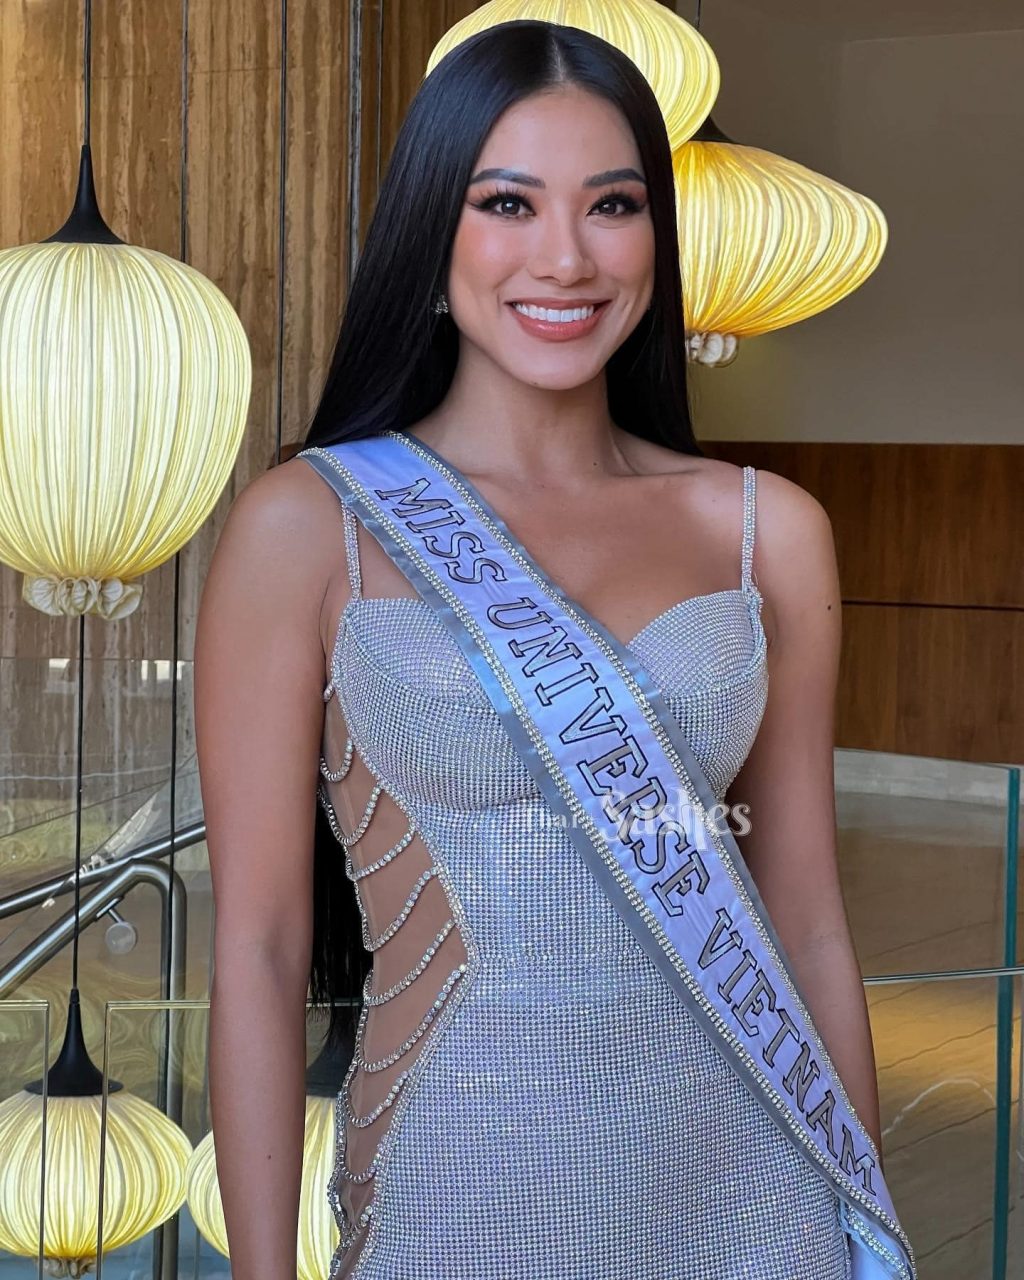 Á hậu Kim Duyên thực hiện dịch vụ Niềng răng 6 MONTHS SMILE của nha khoa Blossom trước khi trước khi tham dự Miss Universe 2021.